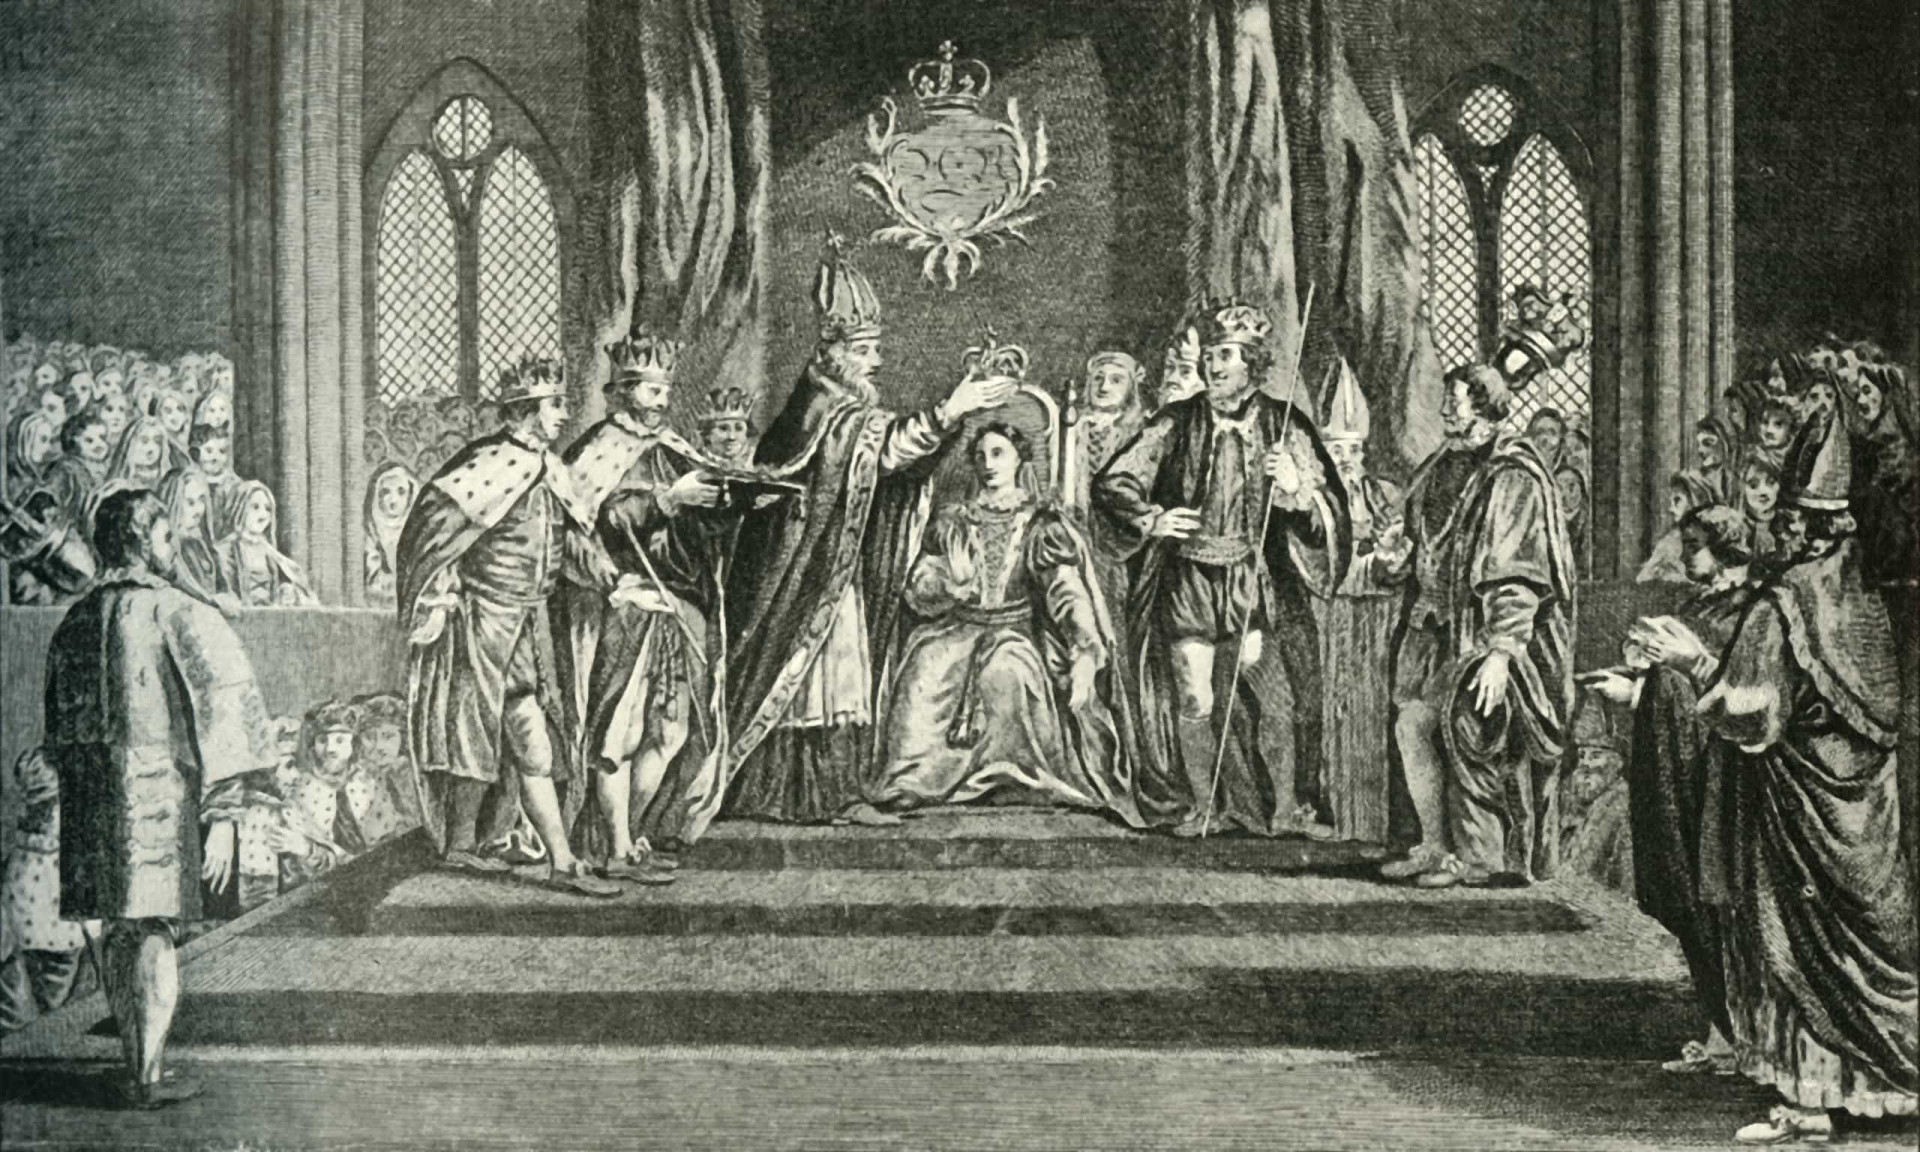 <p><span><span>Ana Bolena foi coroada rainha consorte em 1º de junho de 1533. Em setembro, ela deu à luz a futura Rainha Elizabeth I. Mas ela sabia que era imperativo que tivesse um menino.</span></span> <span><span>Na verdade, a vida dela dependia disso!</span></span></p><p>Veja também:<a href="https://br.starsinsider.com/n/381690?utm_source=msn.com&utm_medium=display&utm_campaign=referral_description&utm_content=586398v5"> Beyoncé quebra recorde: a vida da artista feminina que mais ganhou Grammys na história</a></p>